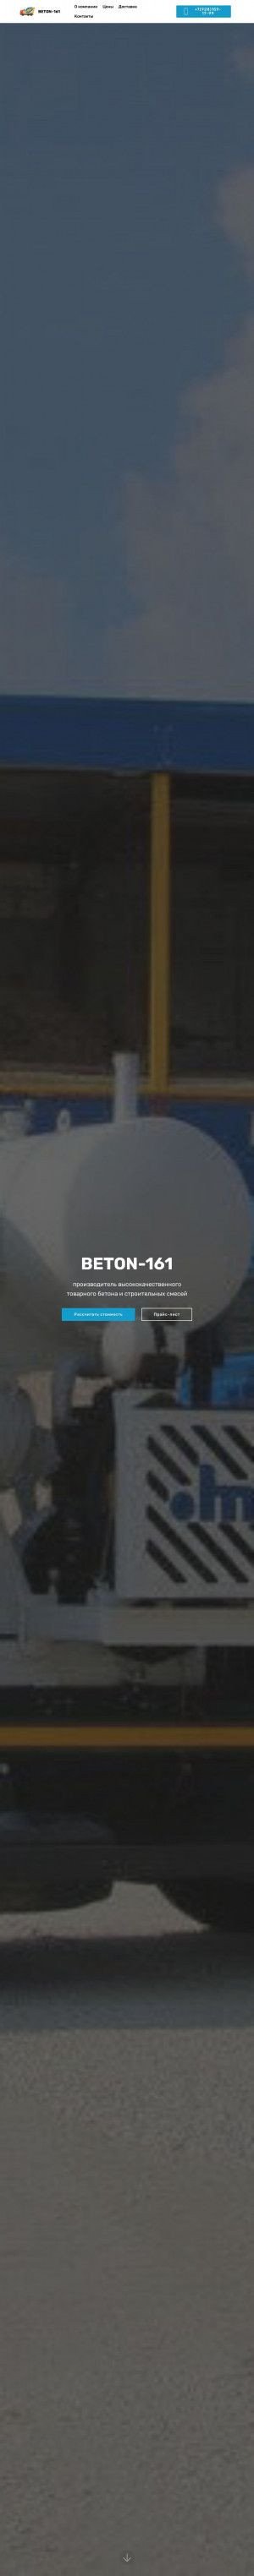 Предпросмотр для www.beton-161.ru — Стройстандарт